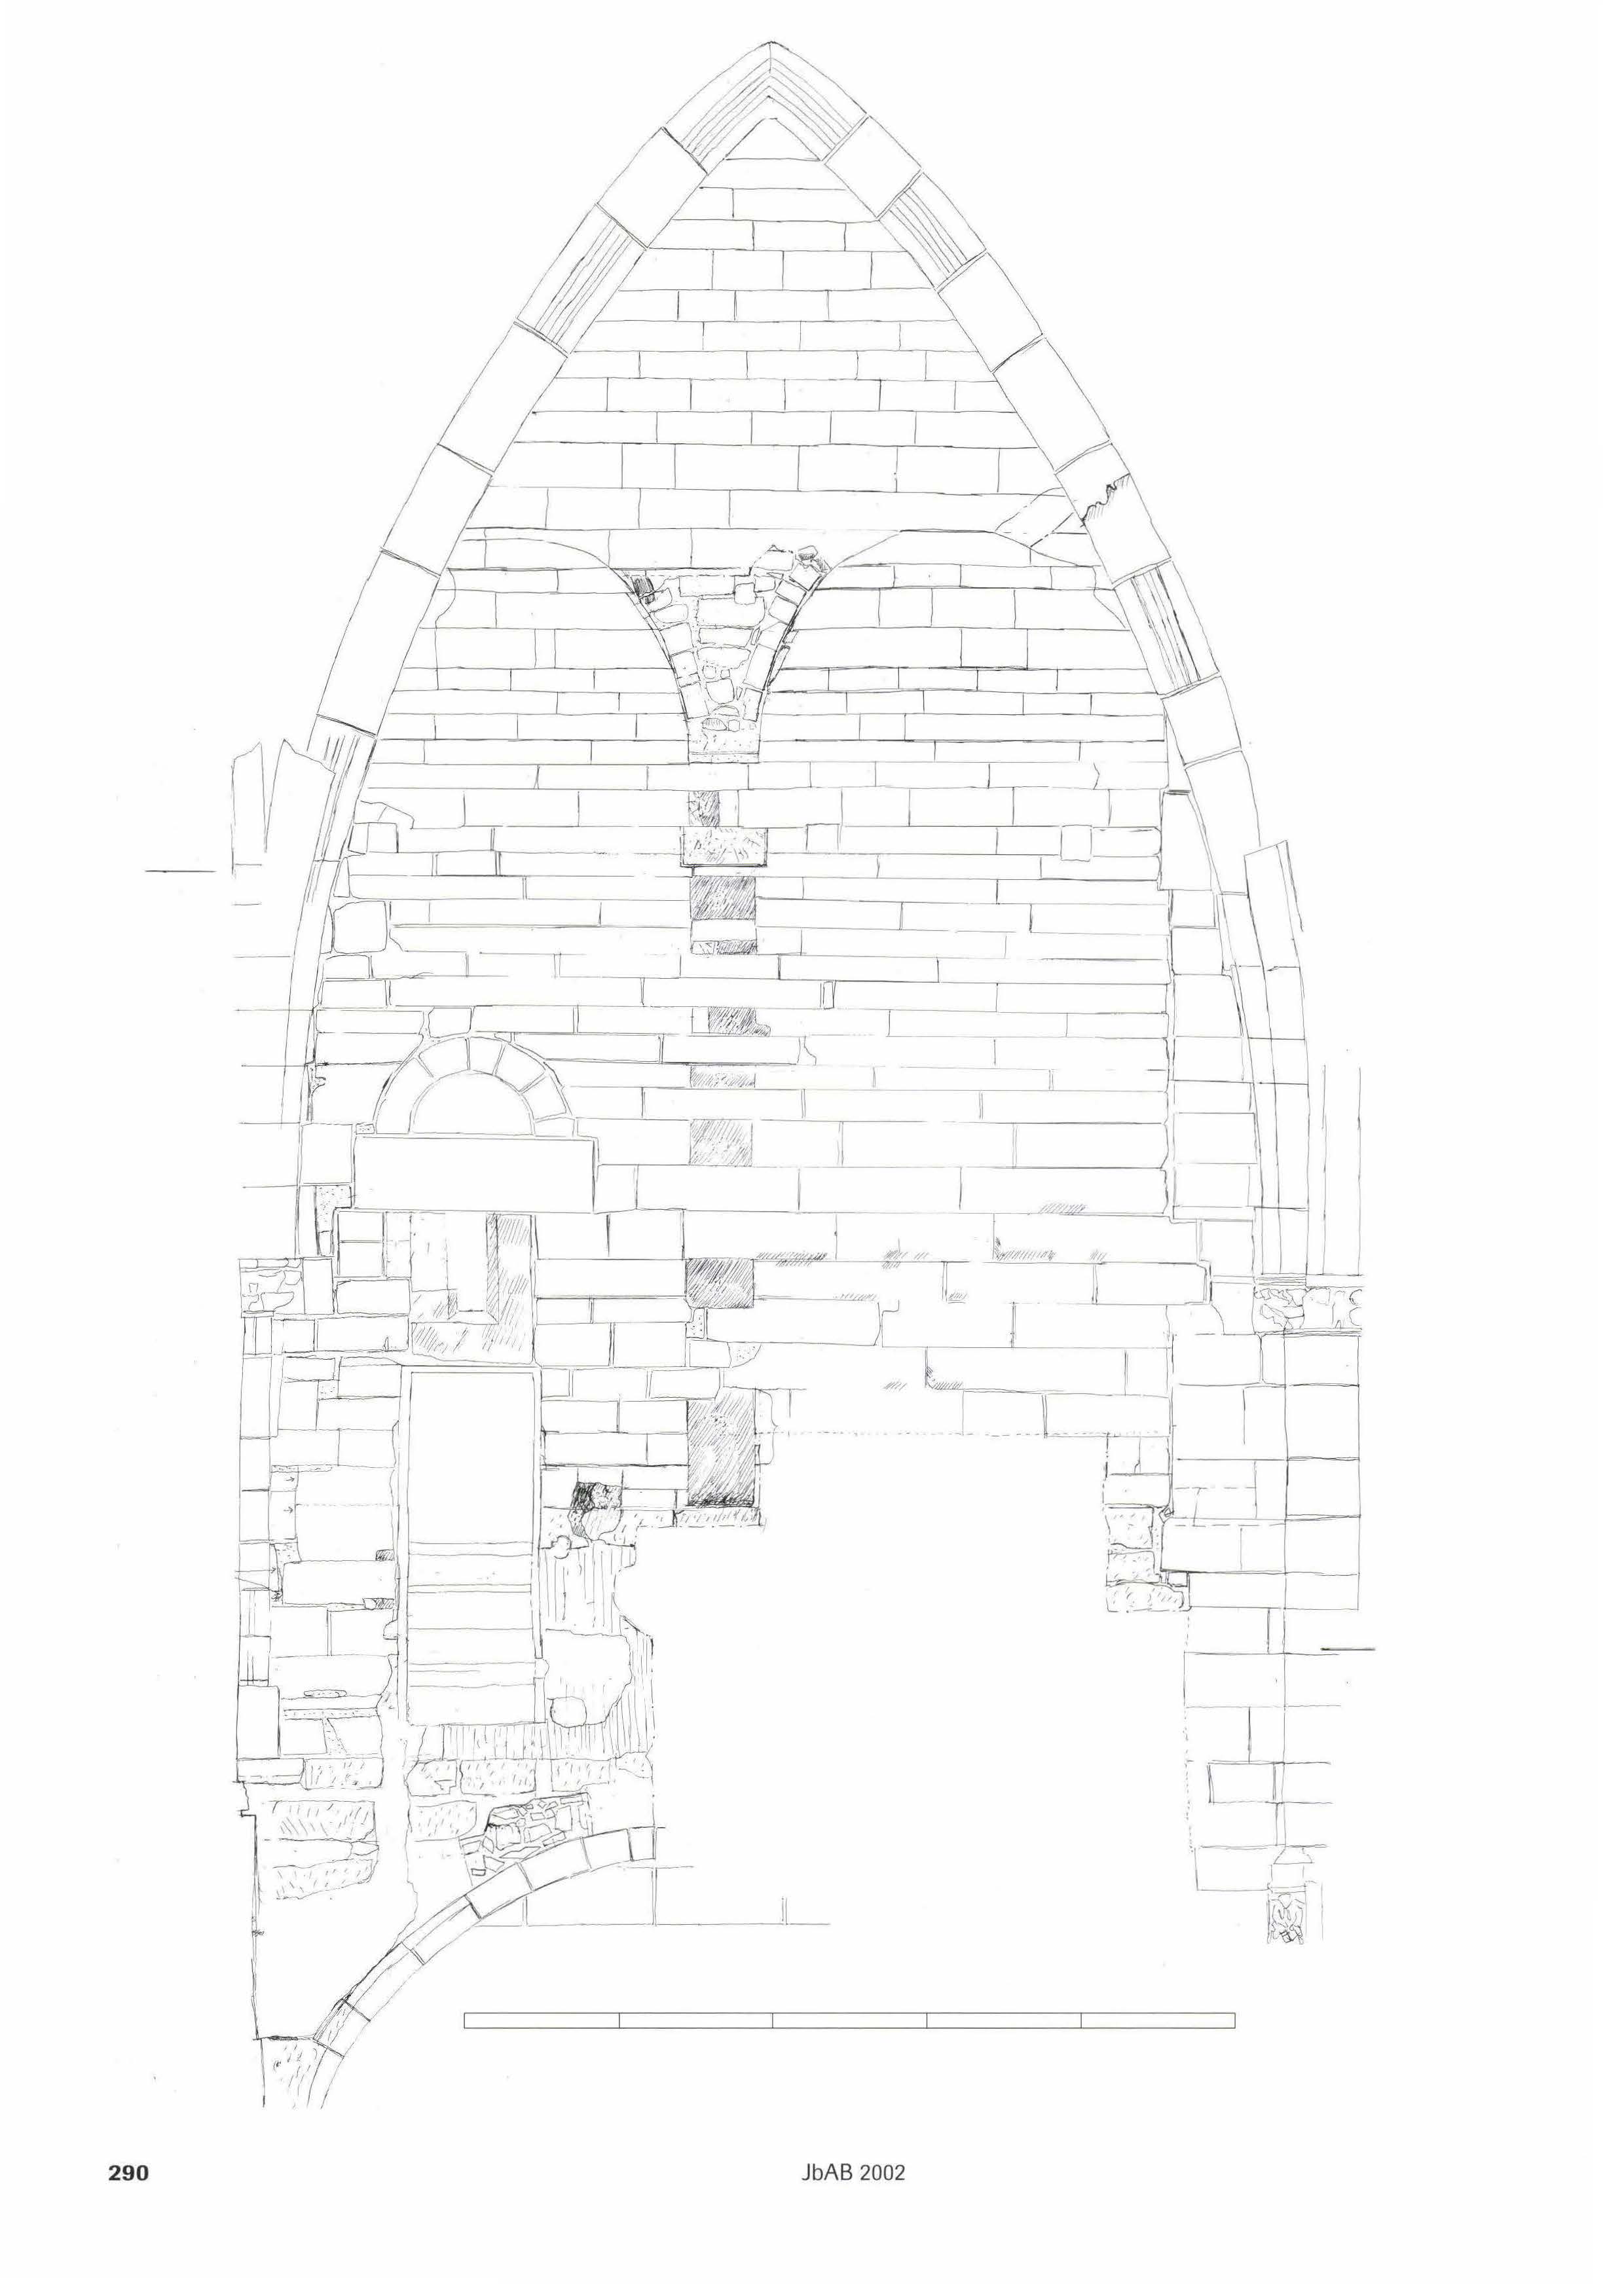 Münster. Zeichnerische Darstellung der Südwand des Georgsturms im Bereich der Orgelempore